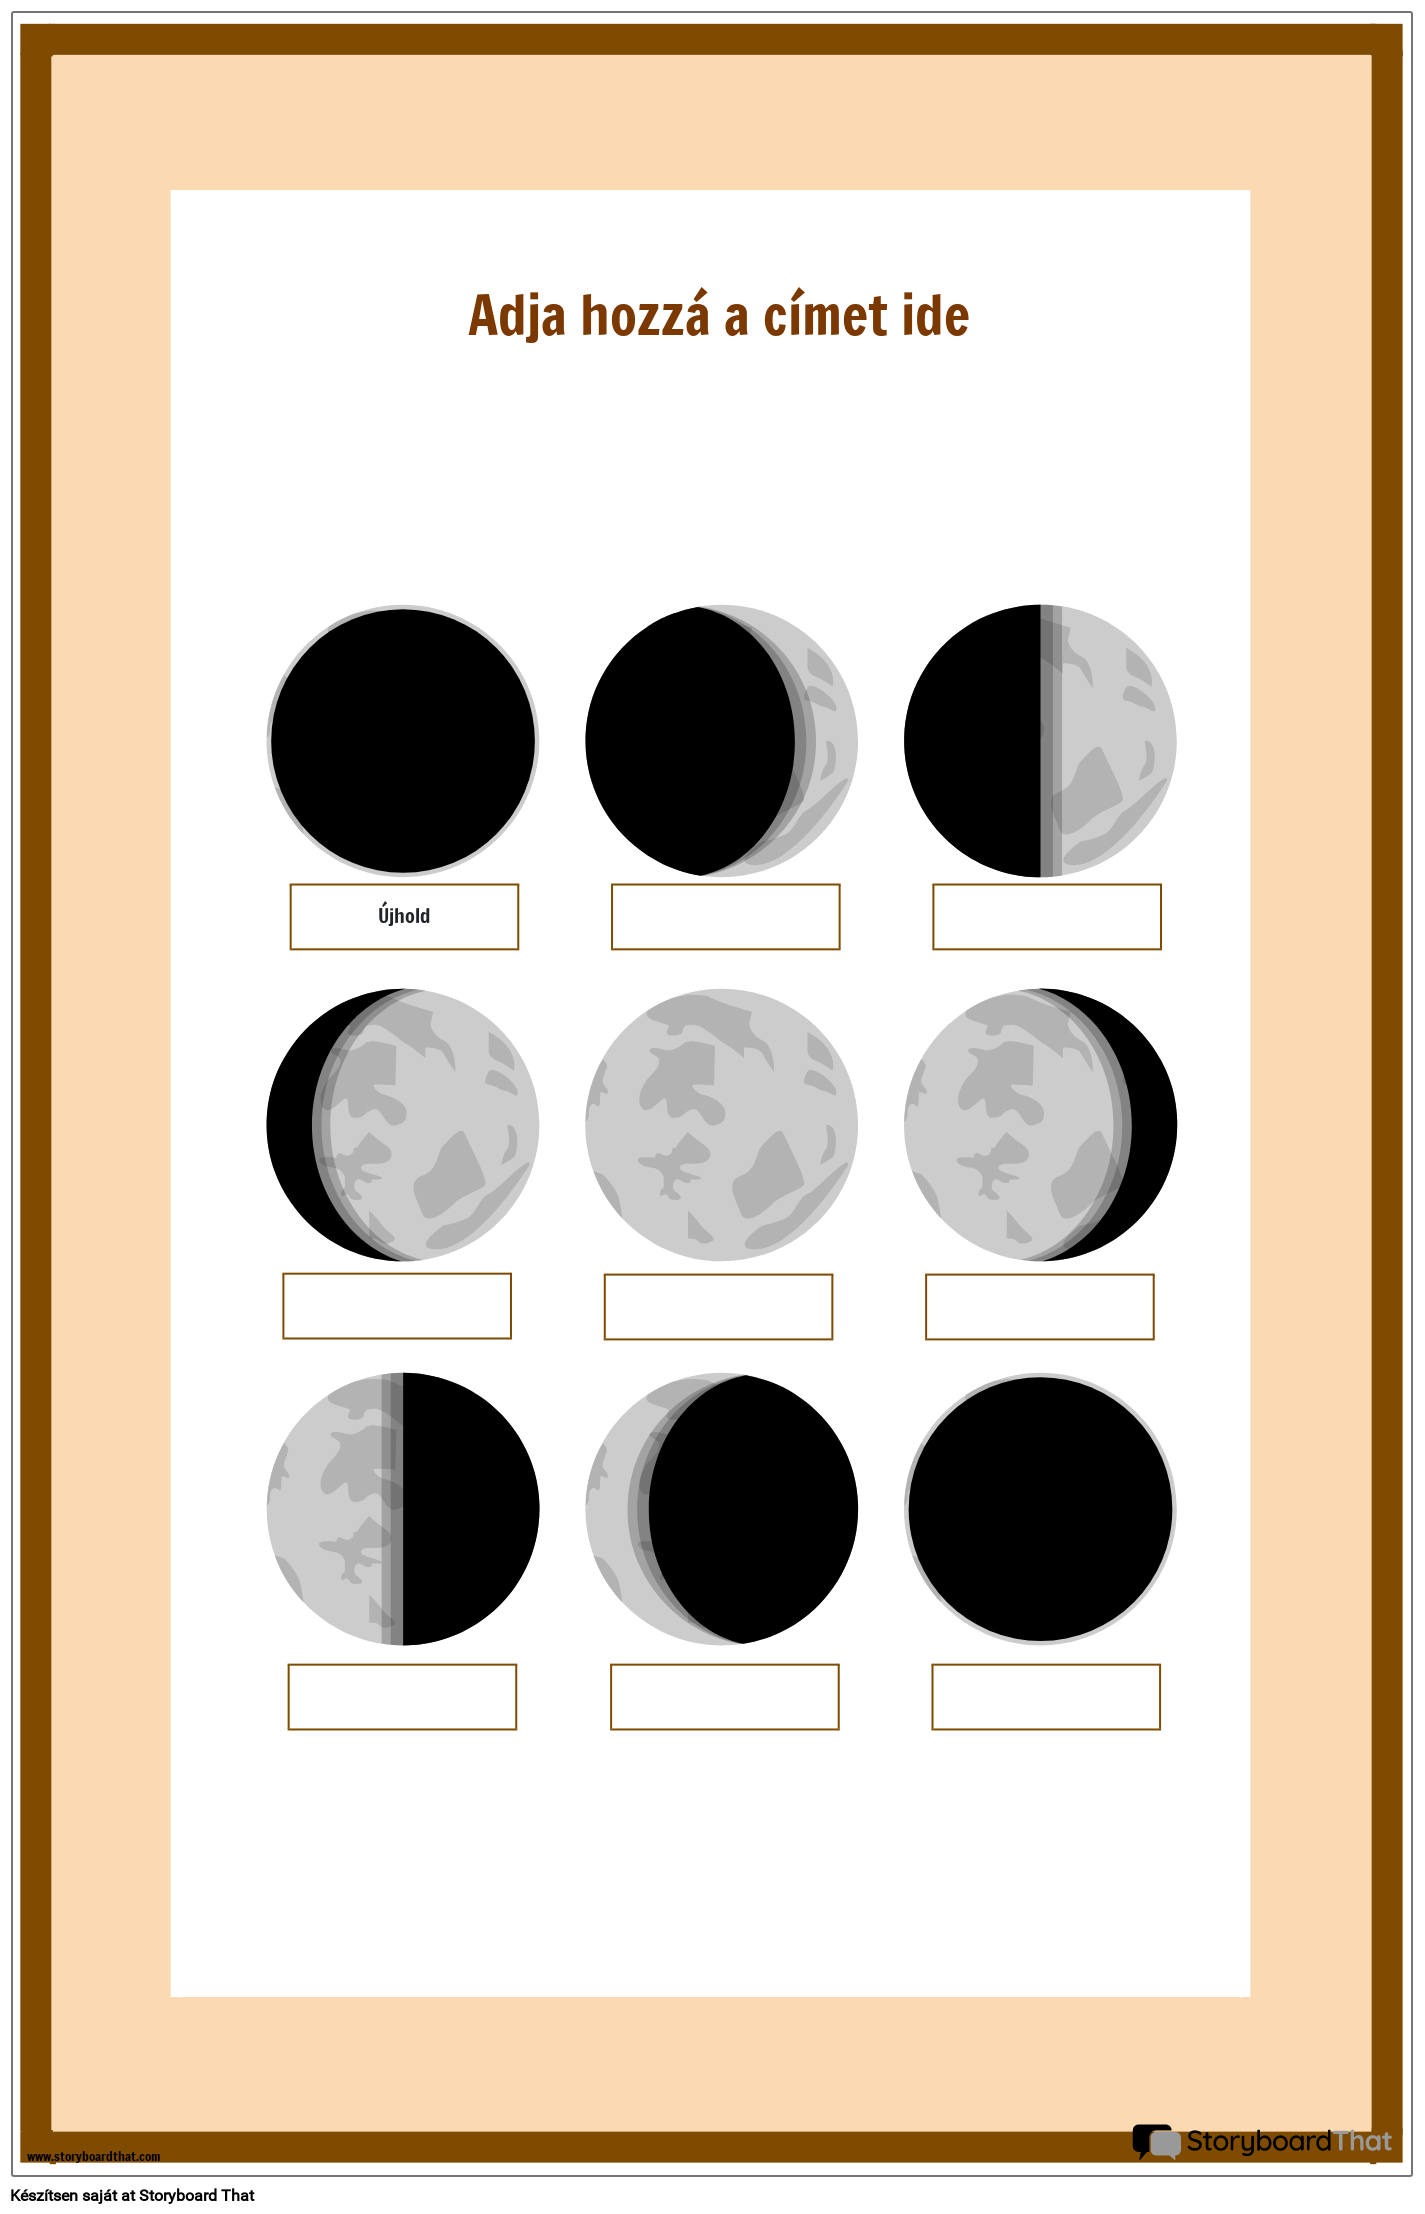 A Hold Fázisai, Vászon Poszter